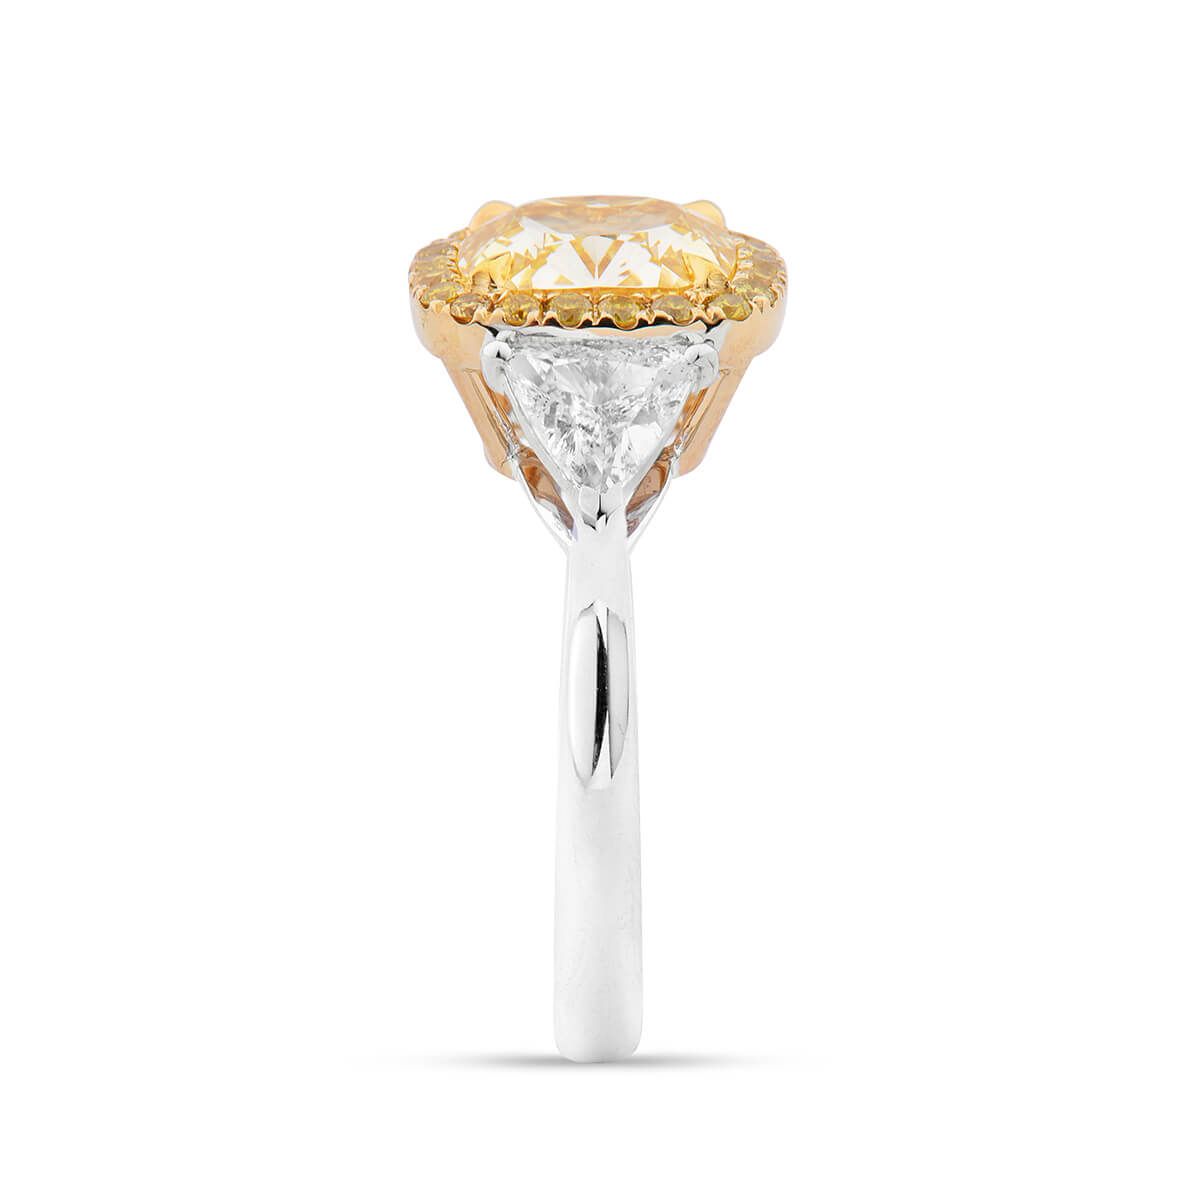 Fancy Intense Yellow Diamond Ring, 3.02 Ct. (4.04 Ct. TW), Cushion shape, GIA Certified, 2185676947